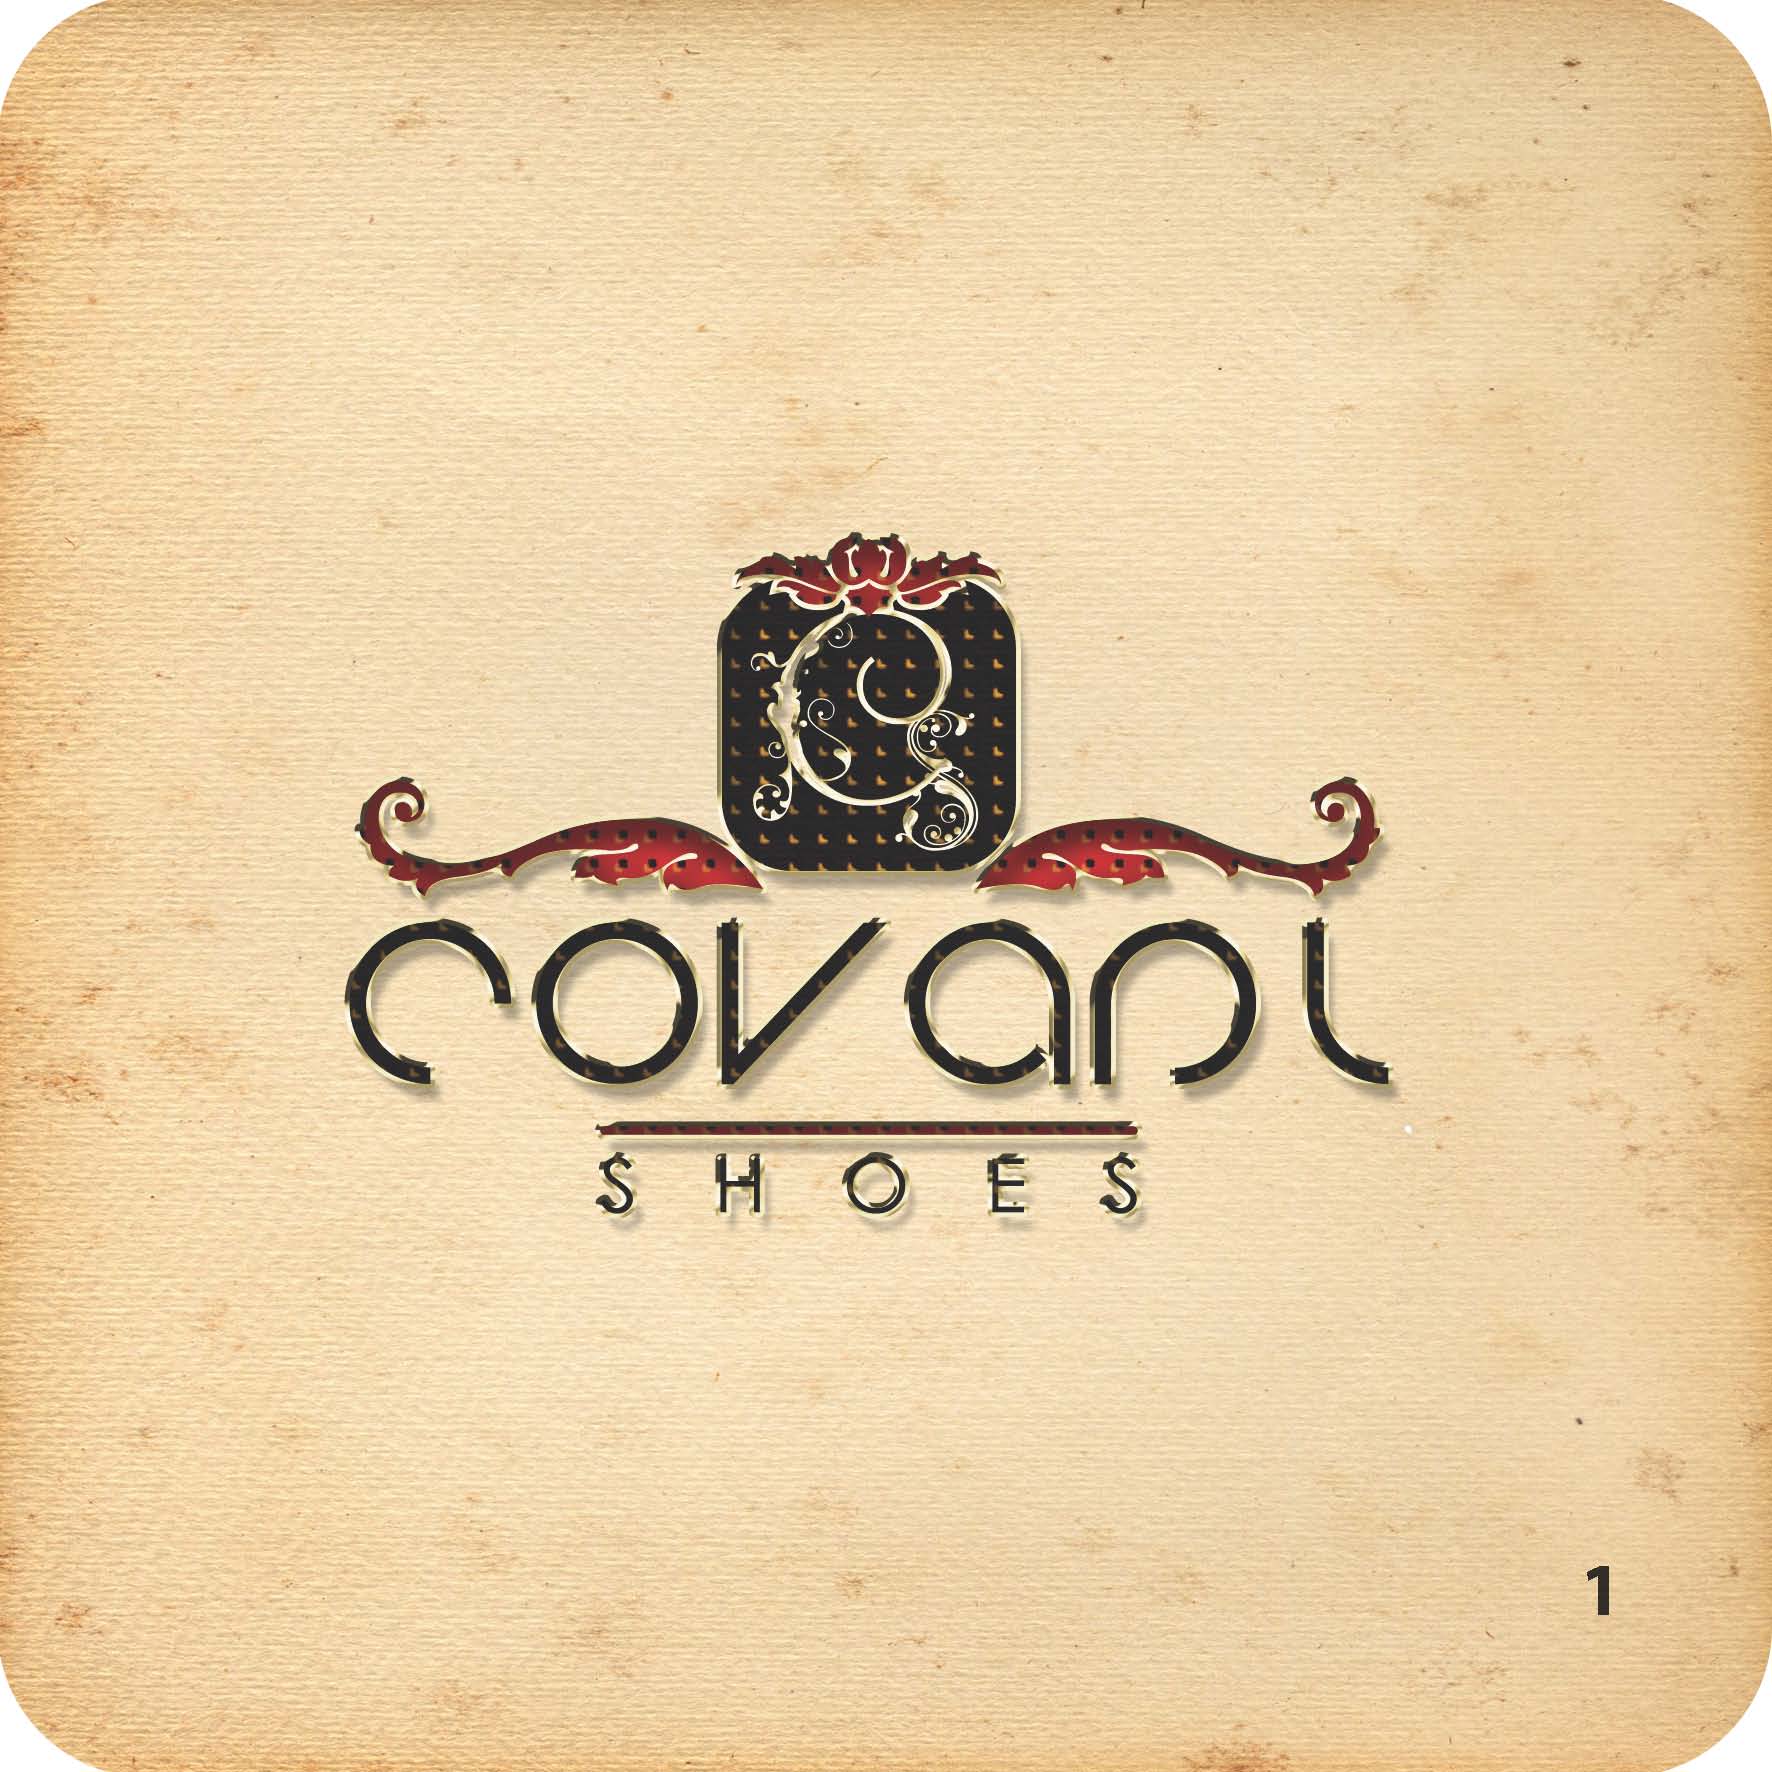 Концепт логотипа Covani